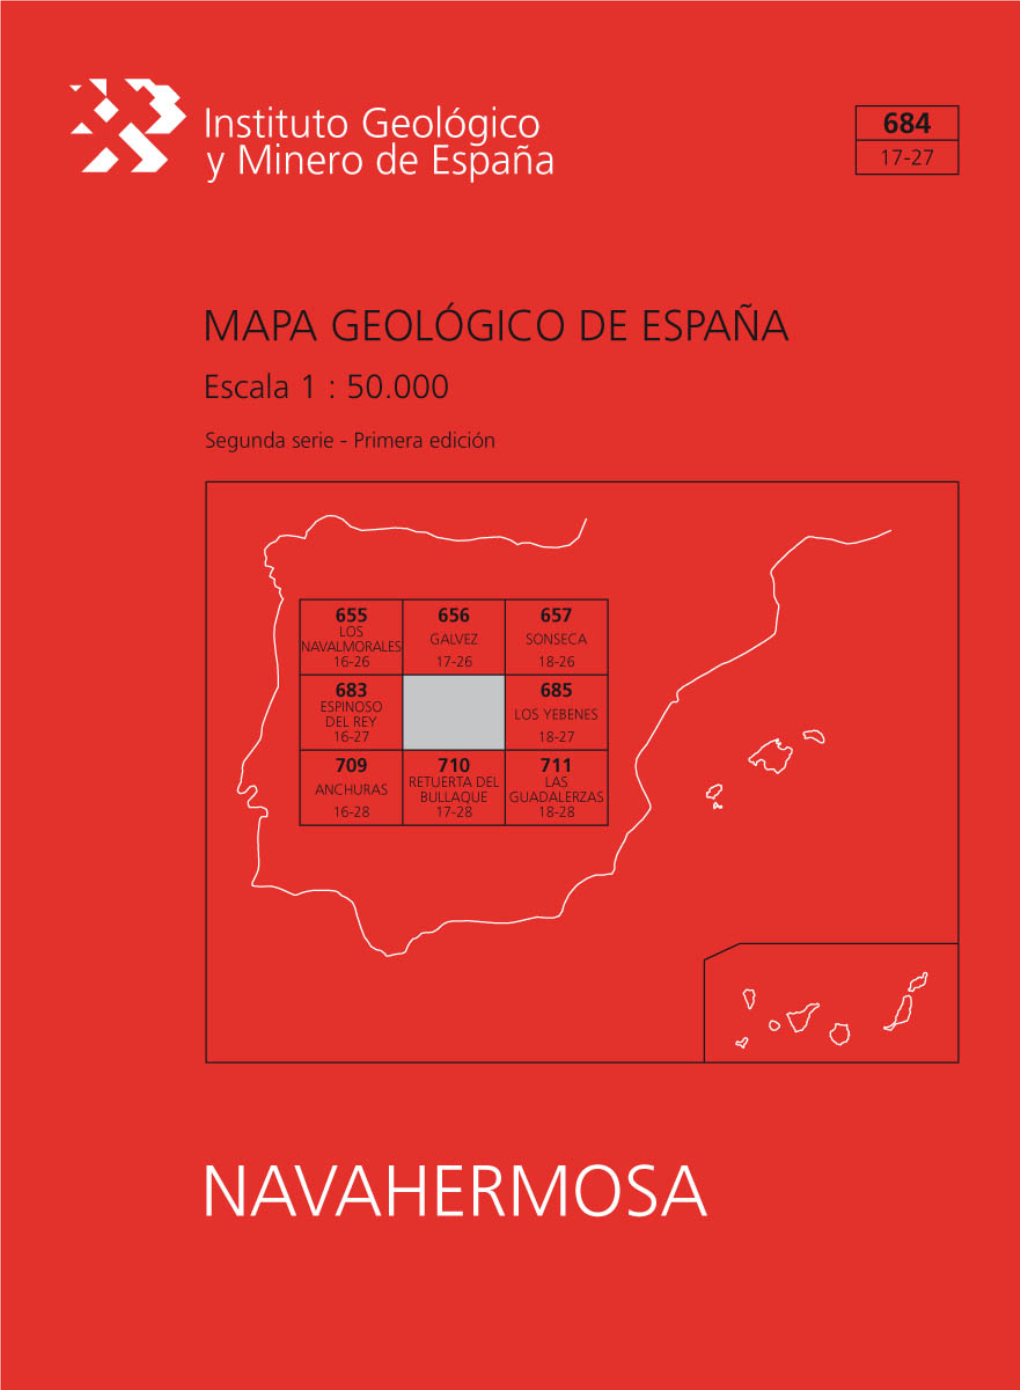 MAPA GEOLÓGICO DE ESPAÑA Escala 1:50.000